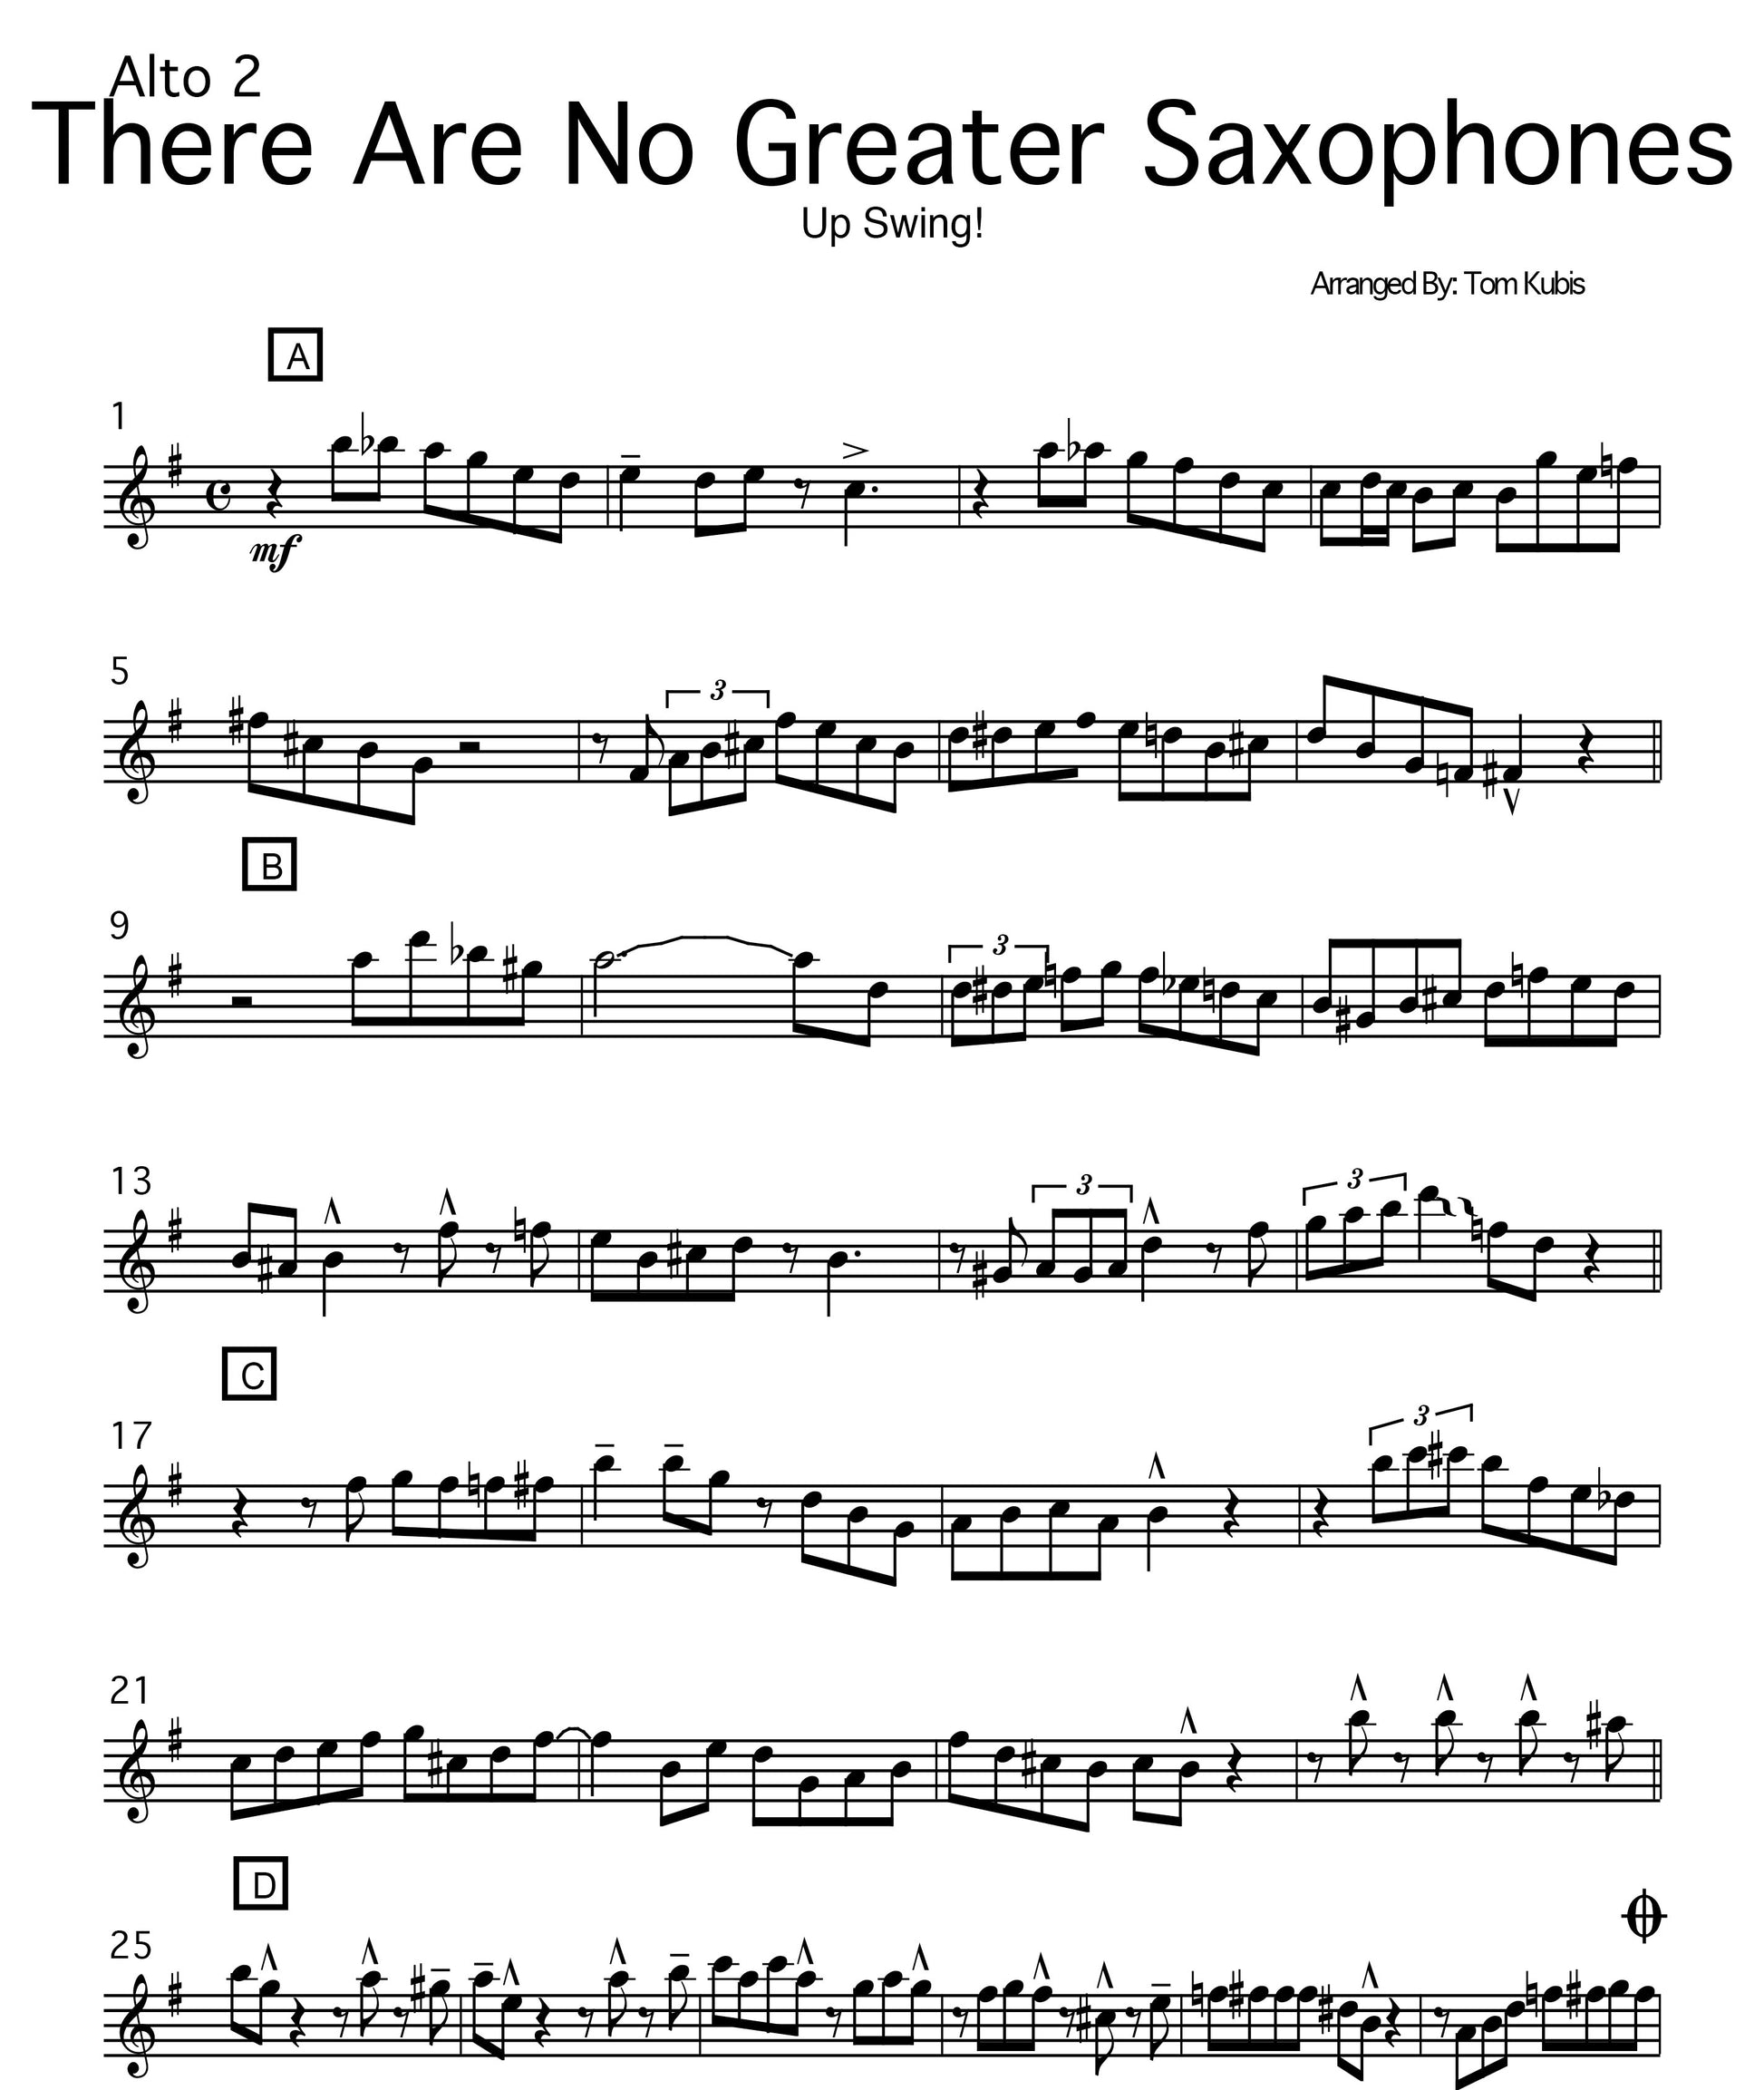 No Greater Saxophones